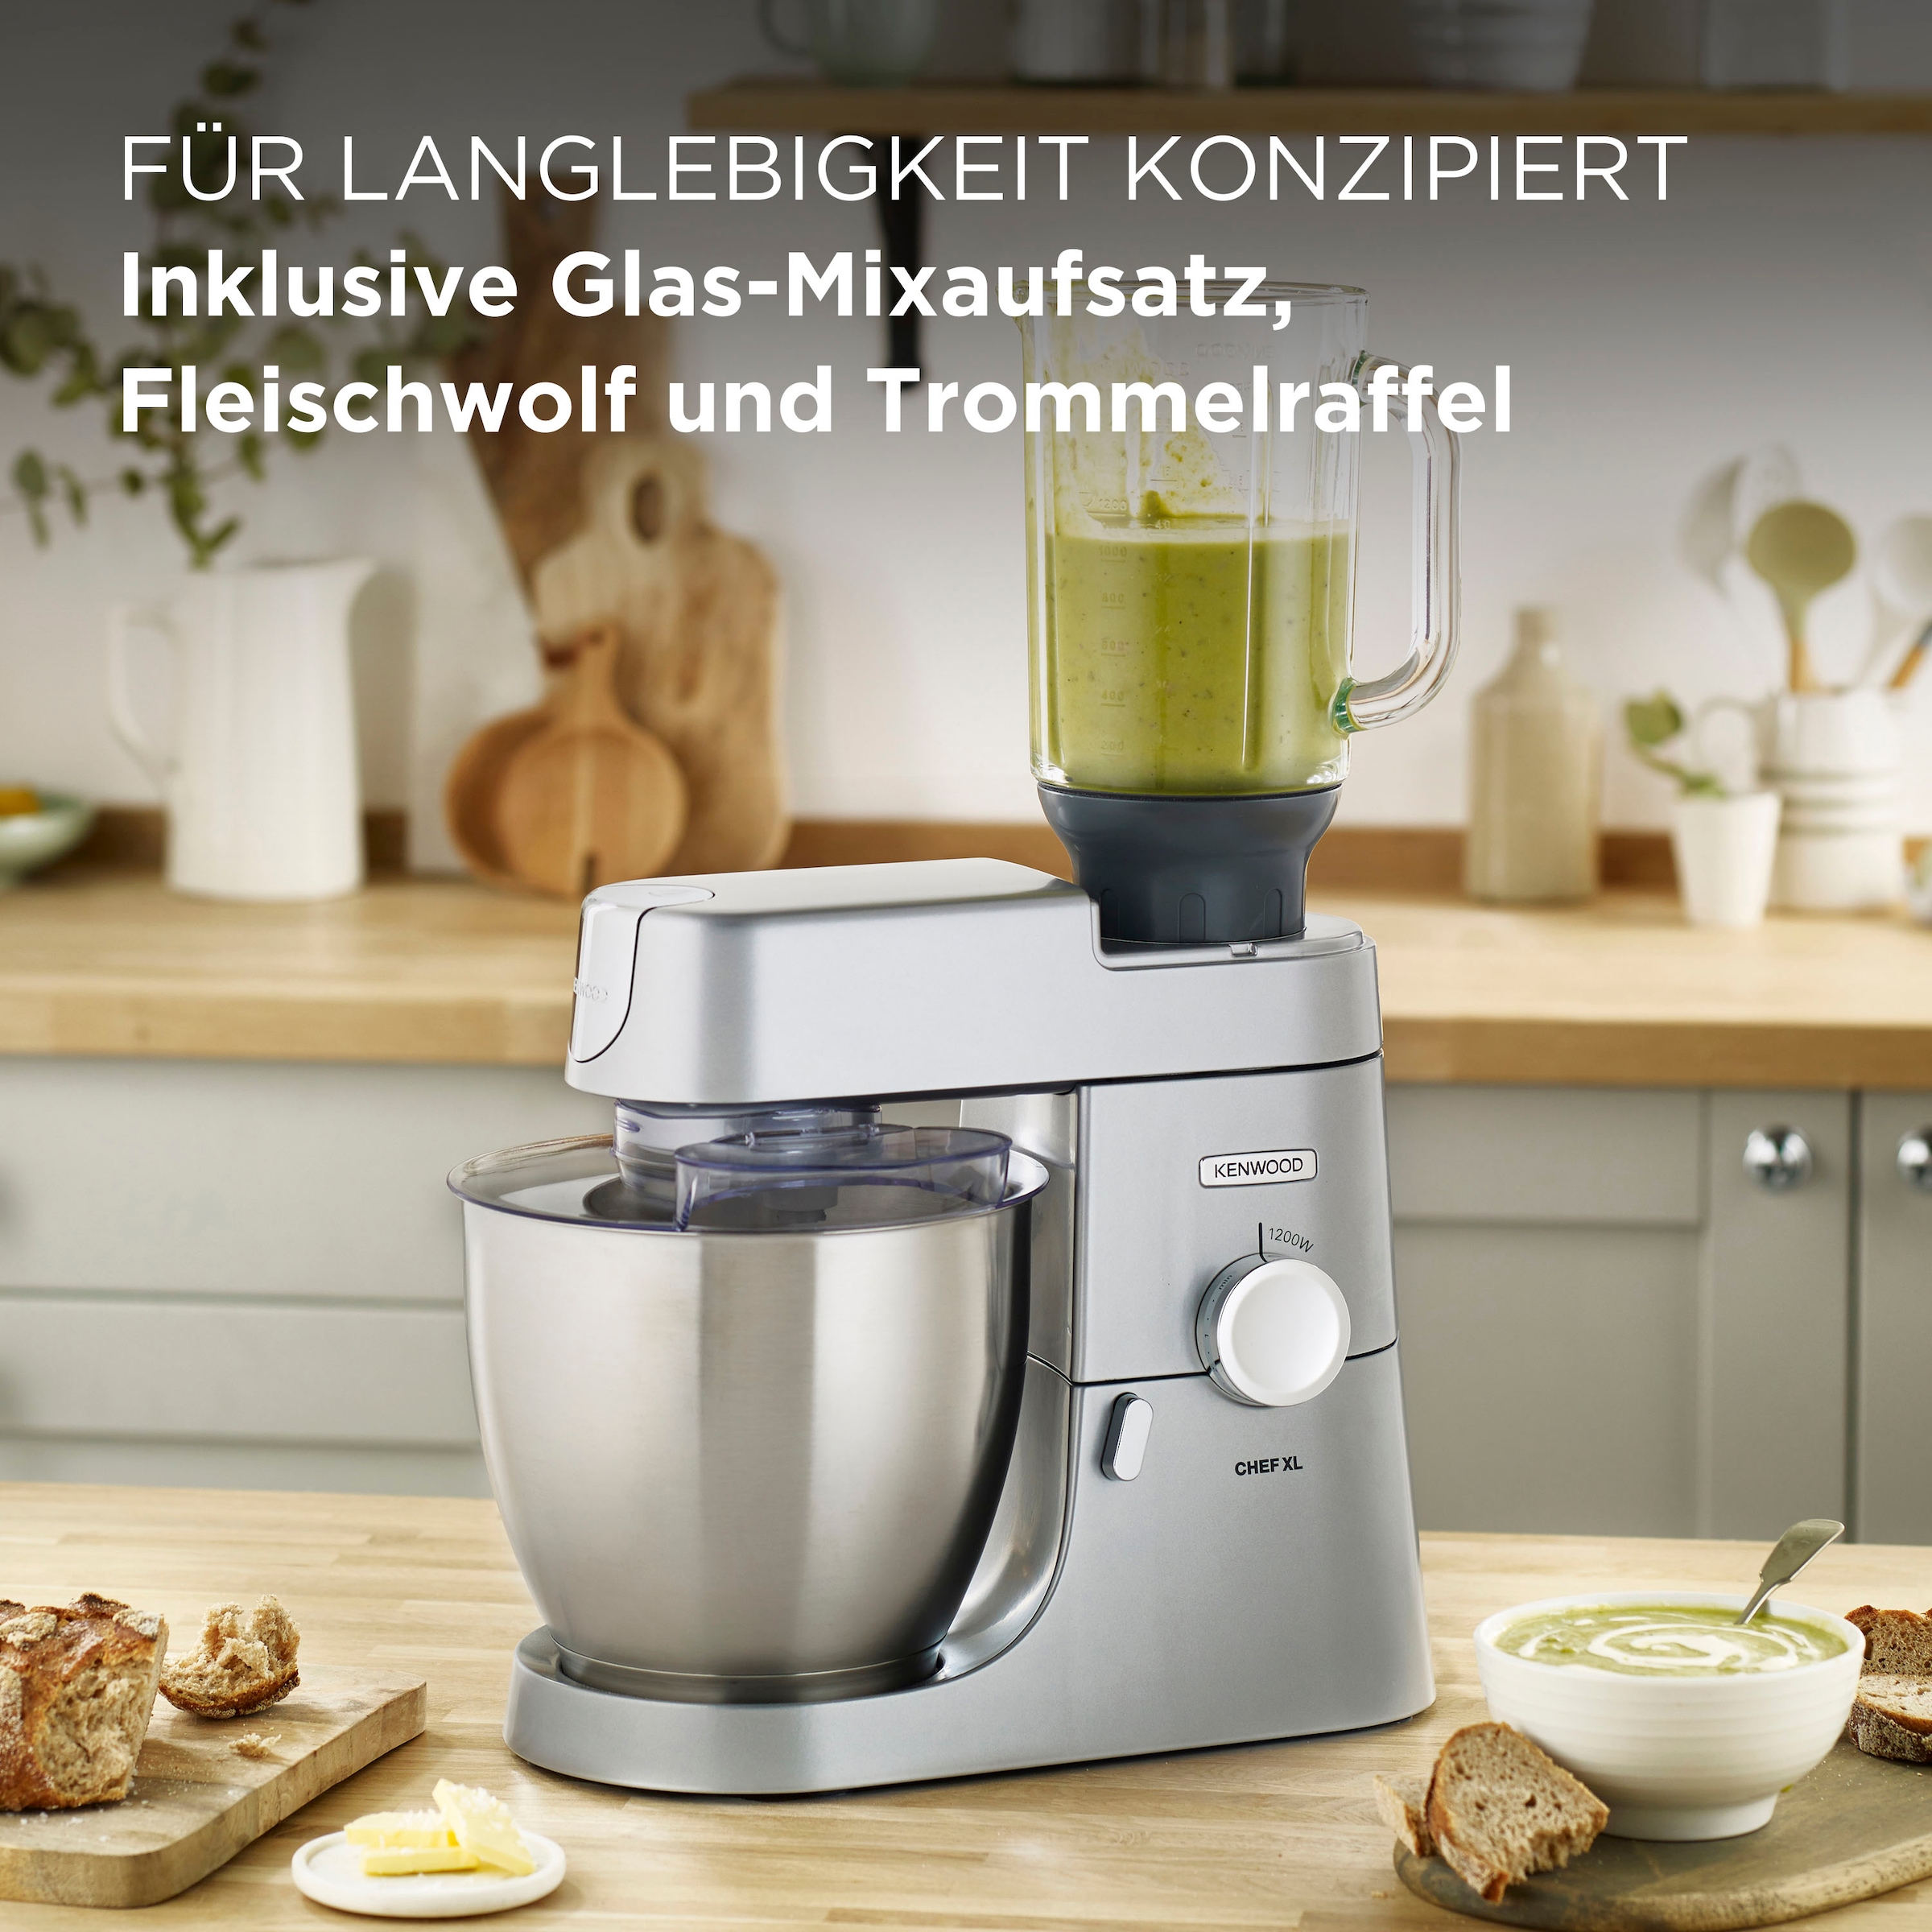 KENWOOD Küchenmaschine »Chef XL KVL4220S«, 6,7 l Schüssel, inkl.  Mixaufsatz, Fleischwolf und Trommelraffel | BAUR | Multifunktionsküchenmaschinen